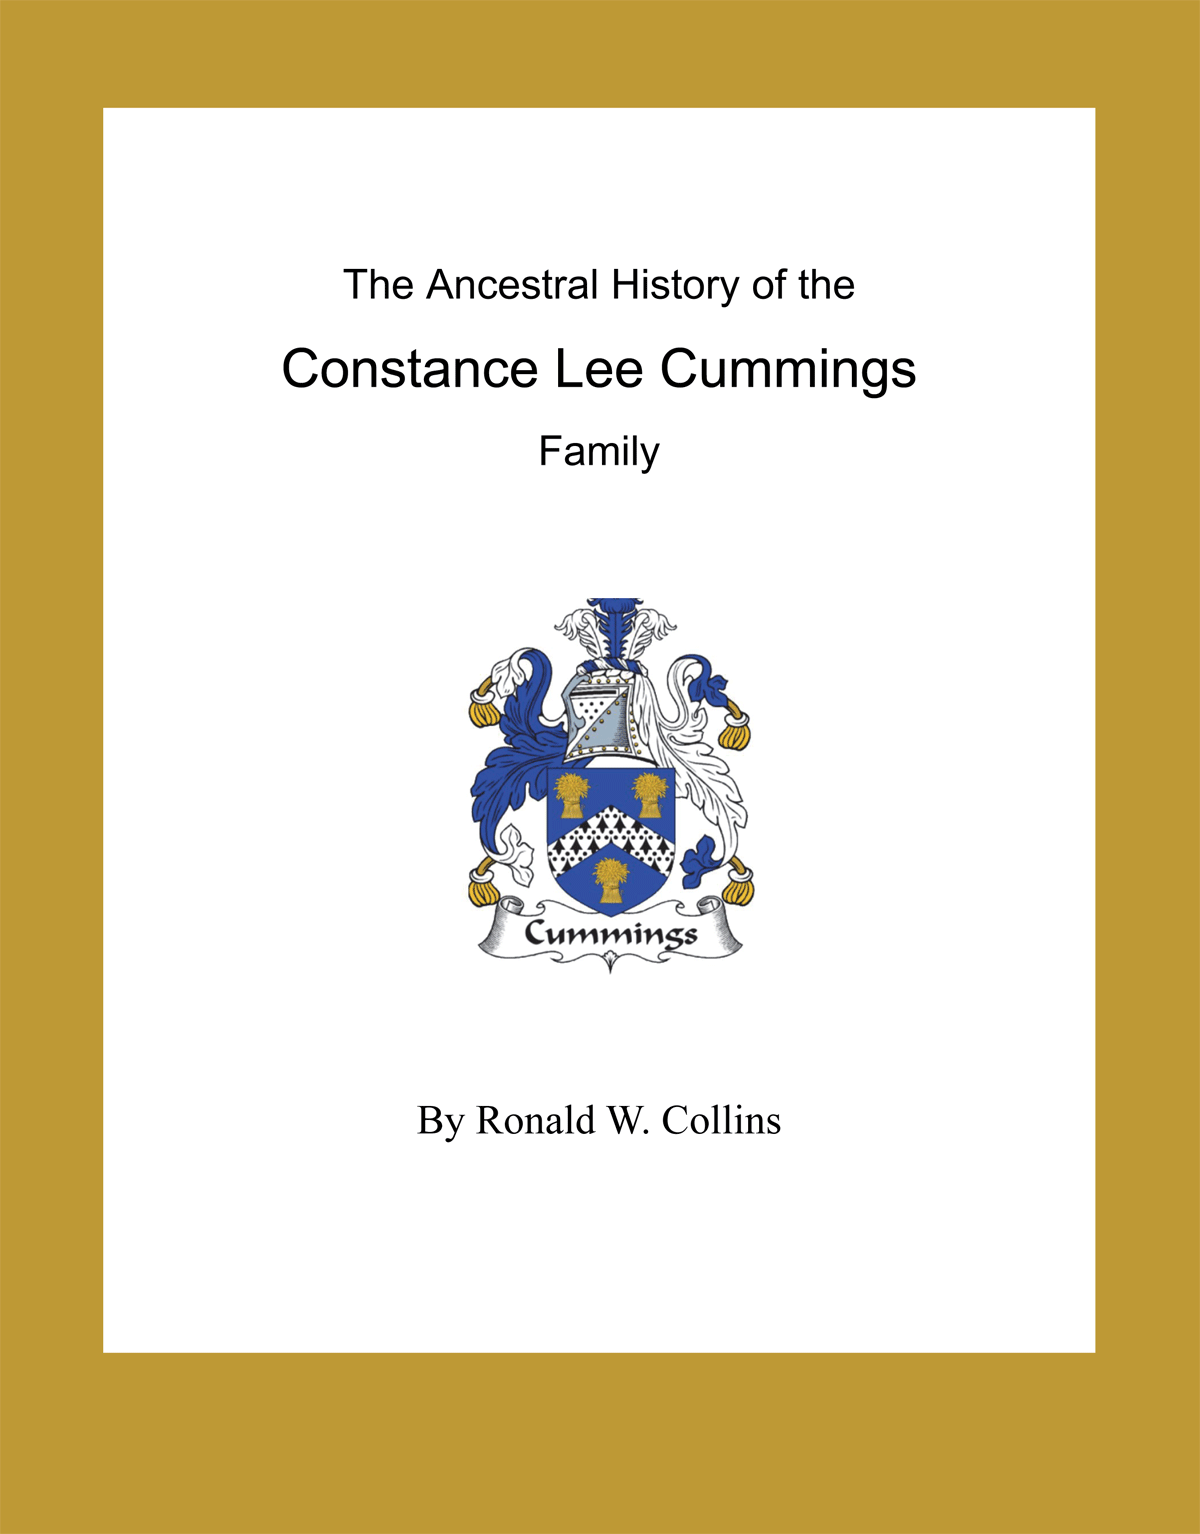 Cummings-Book-Cover